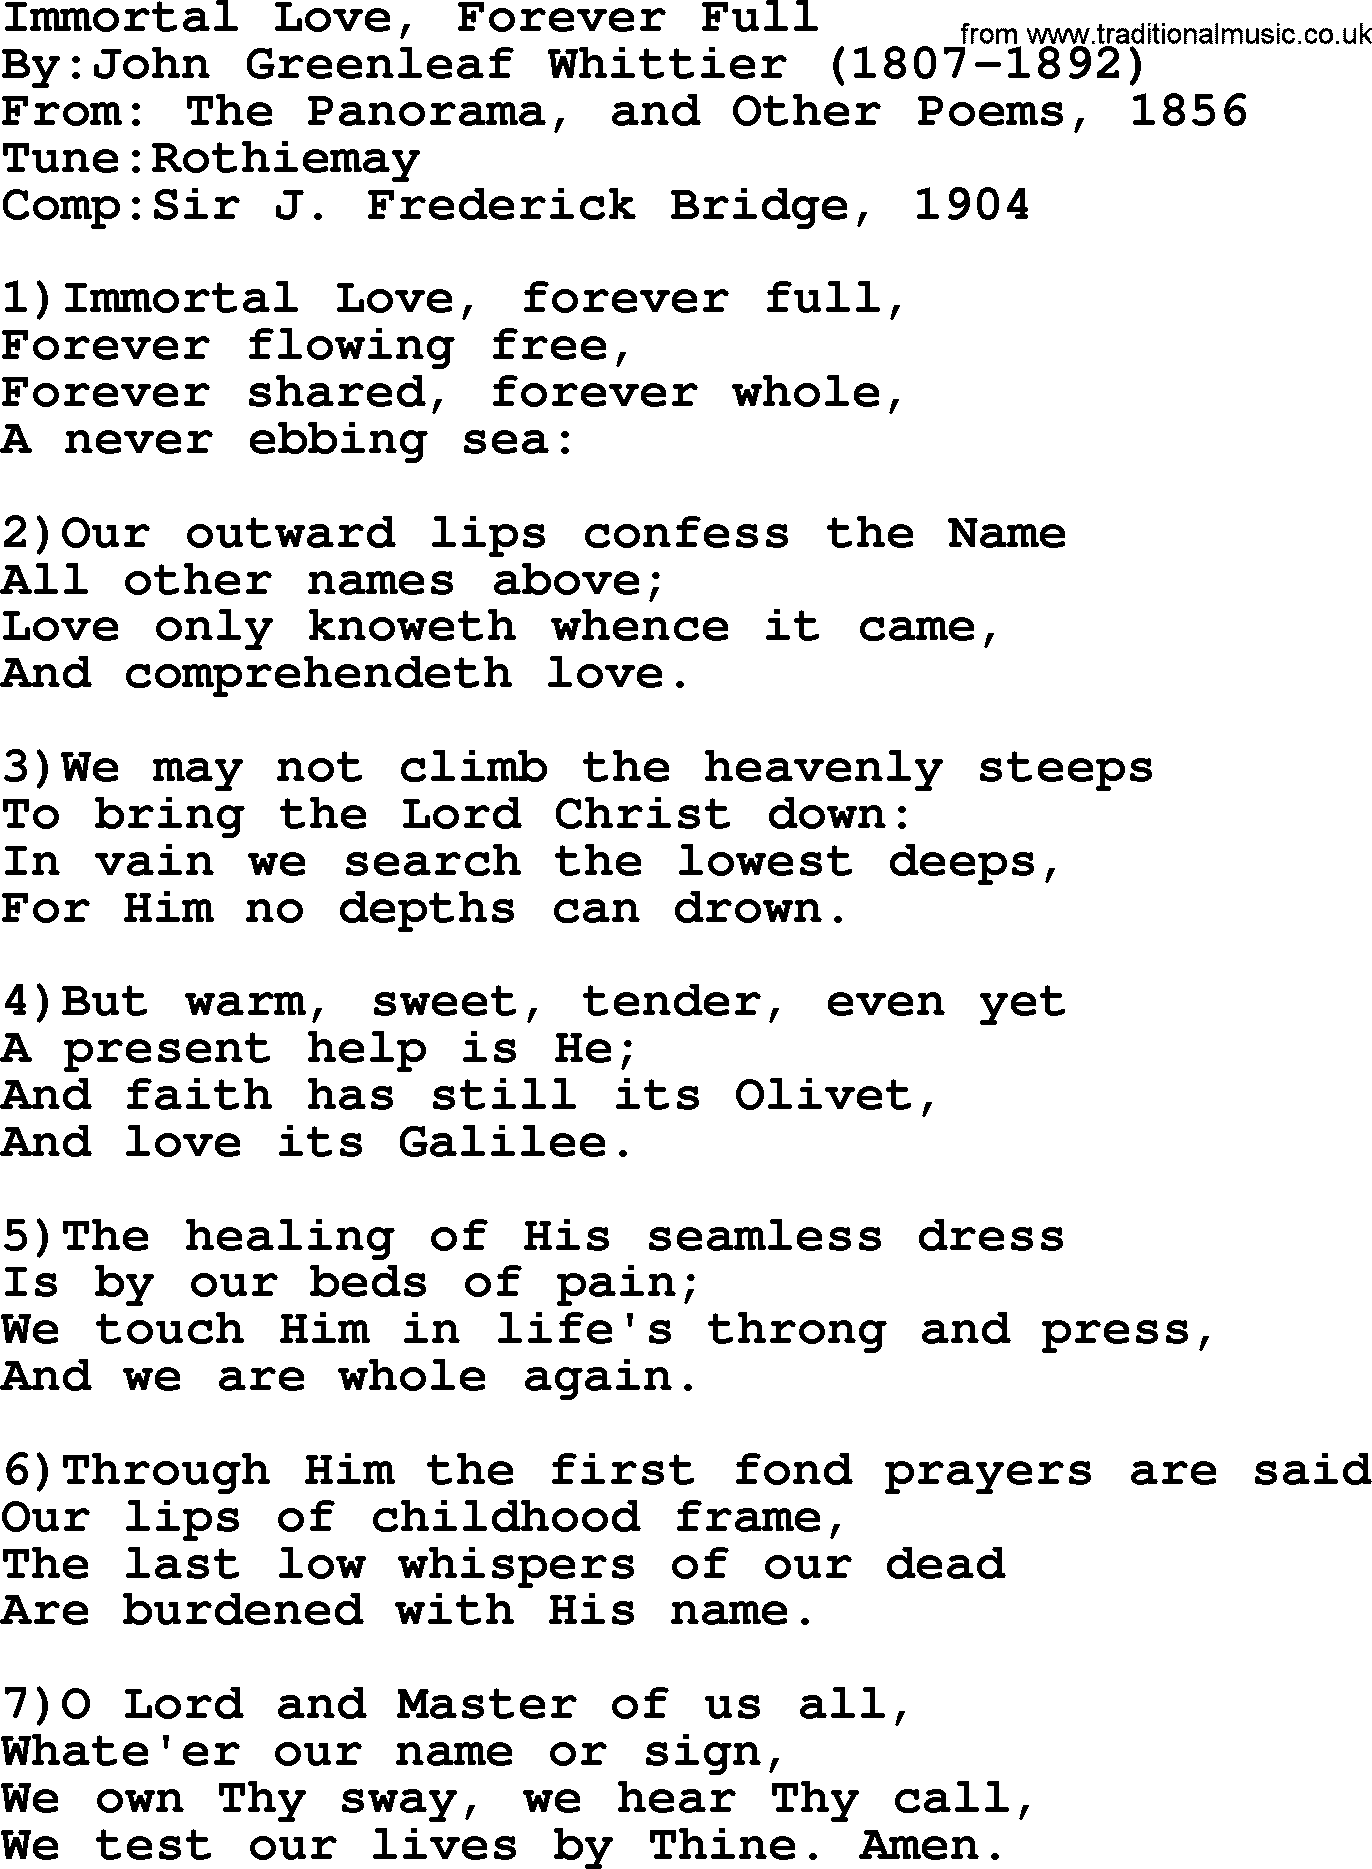 Methodist Hymn: Immortal Love, Forever Full, lyrics